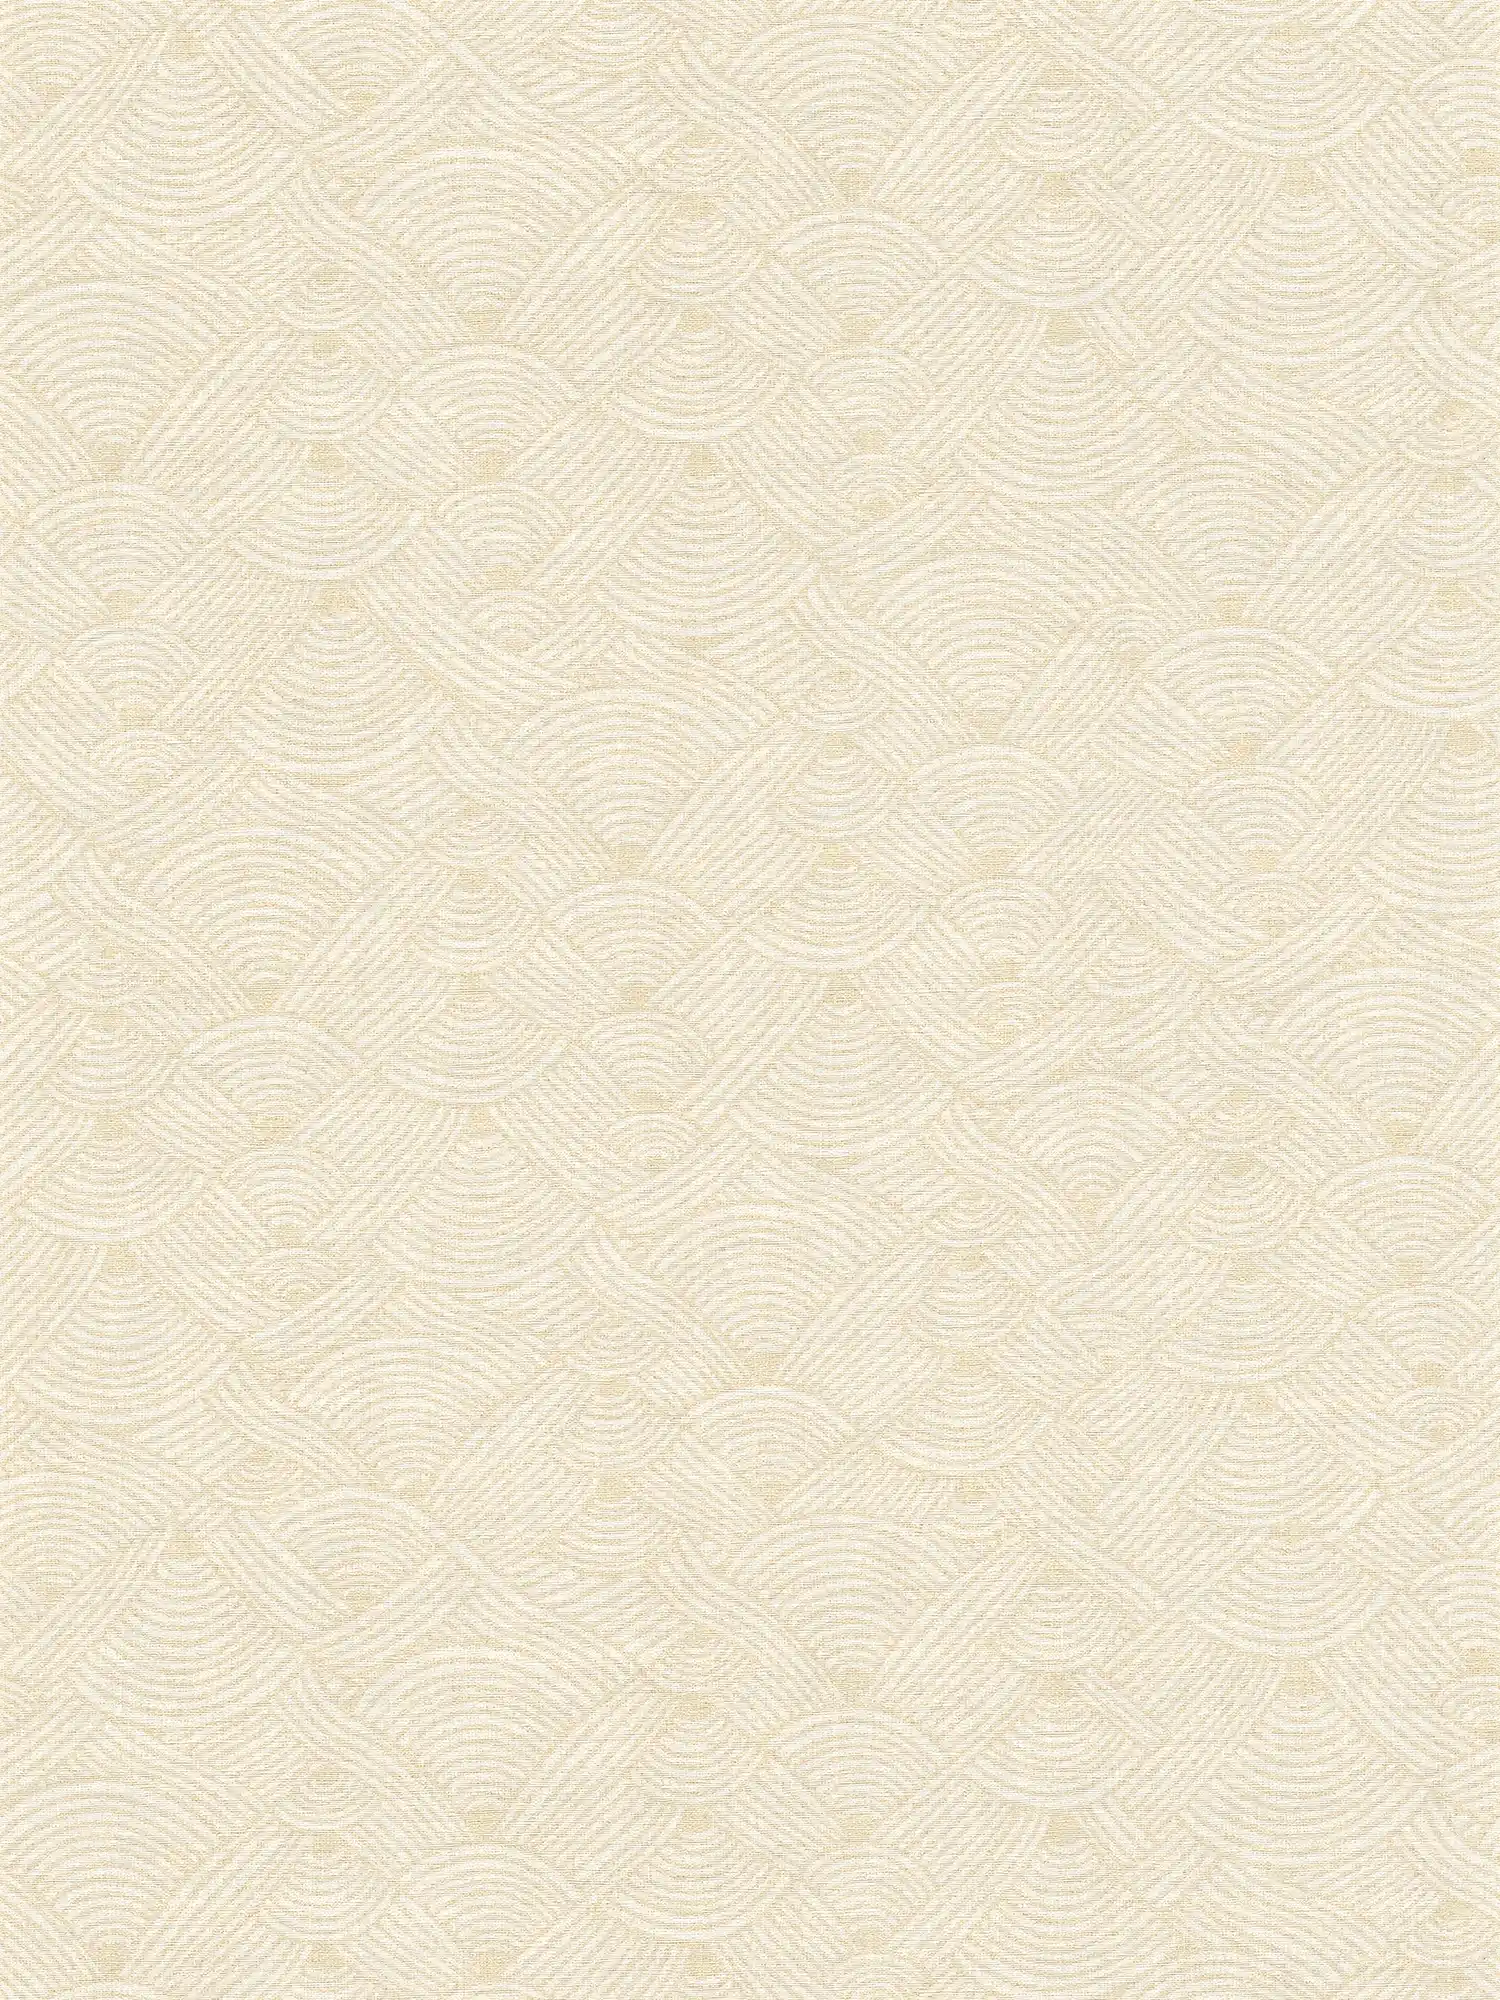 Papier peint intissé Lichen Design dans le style ethnique - crème, blanc
